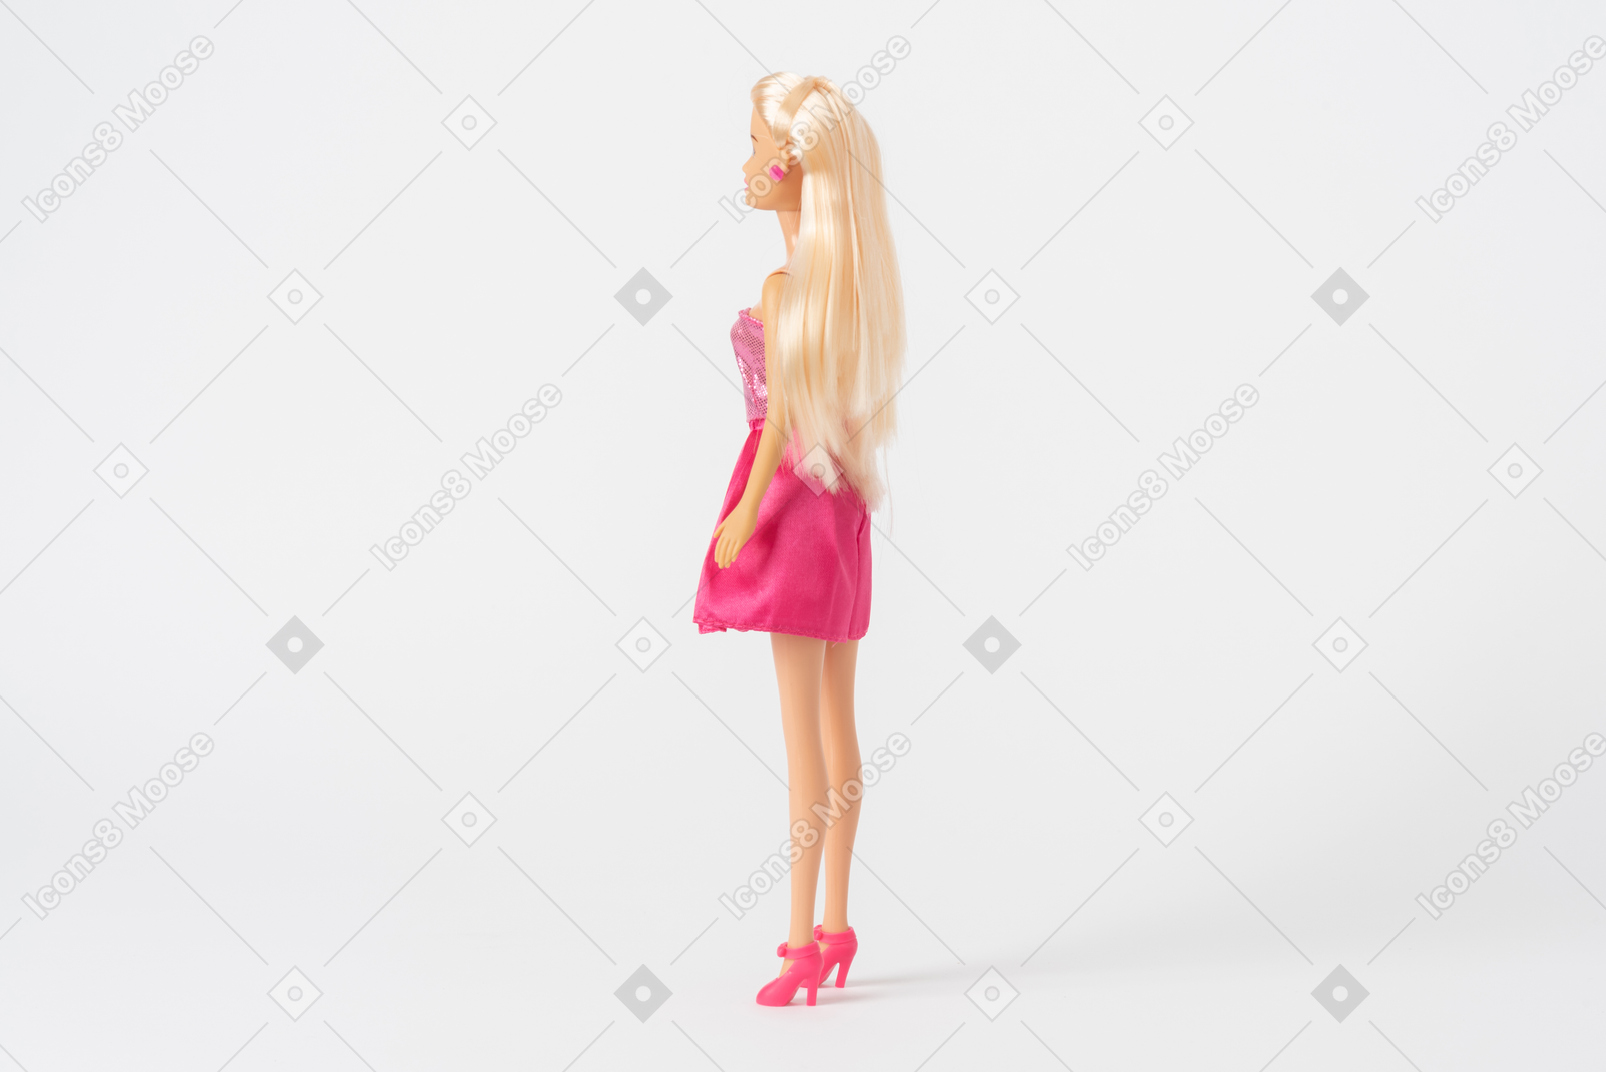 반짝이 핑크 드레스와 핑크 하이힐에 바비 인형의 측면 샷, 평범한 흰색 배경에 고립 된 서